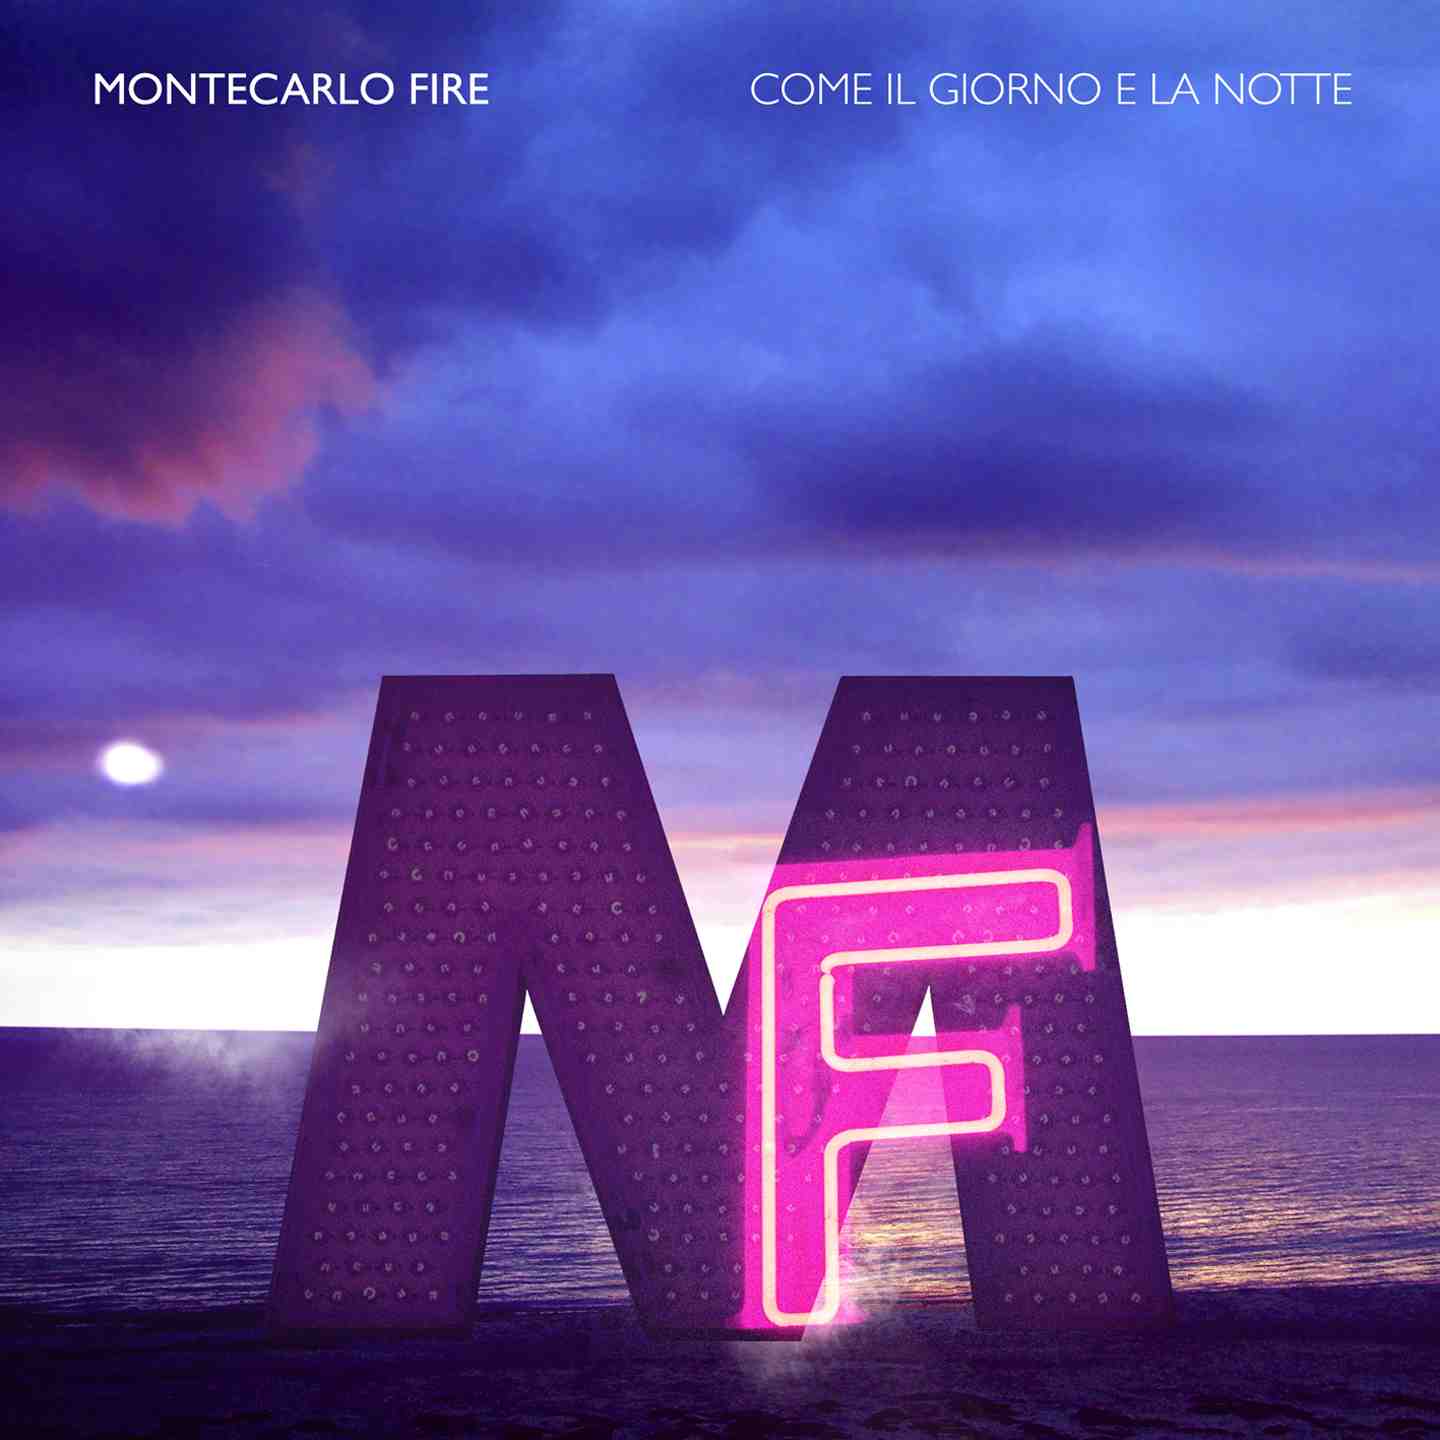 Montecarlo Fire, come il giorno e la notte